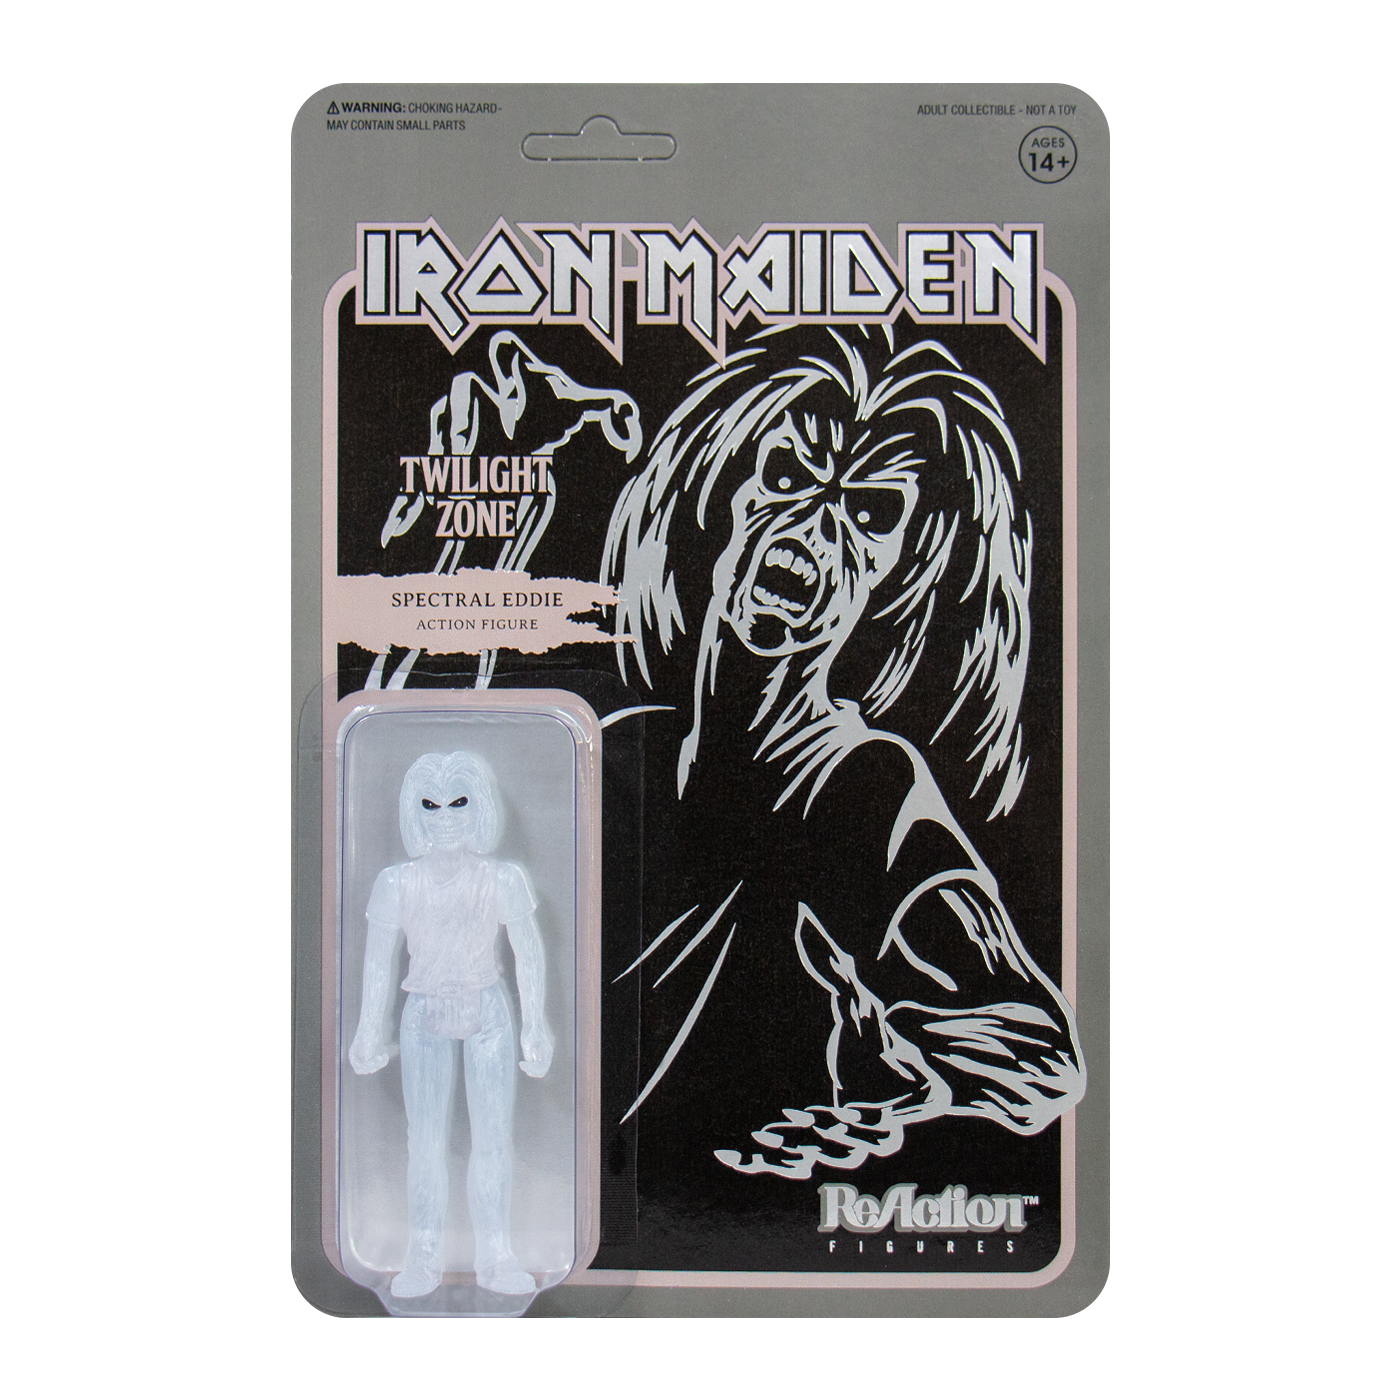 Iron Maiden ReAction Figure - "Twilight Zone (Single Art)"